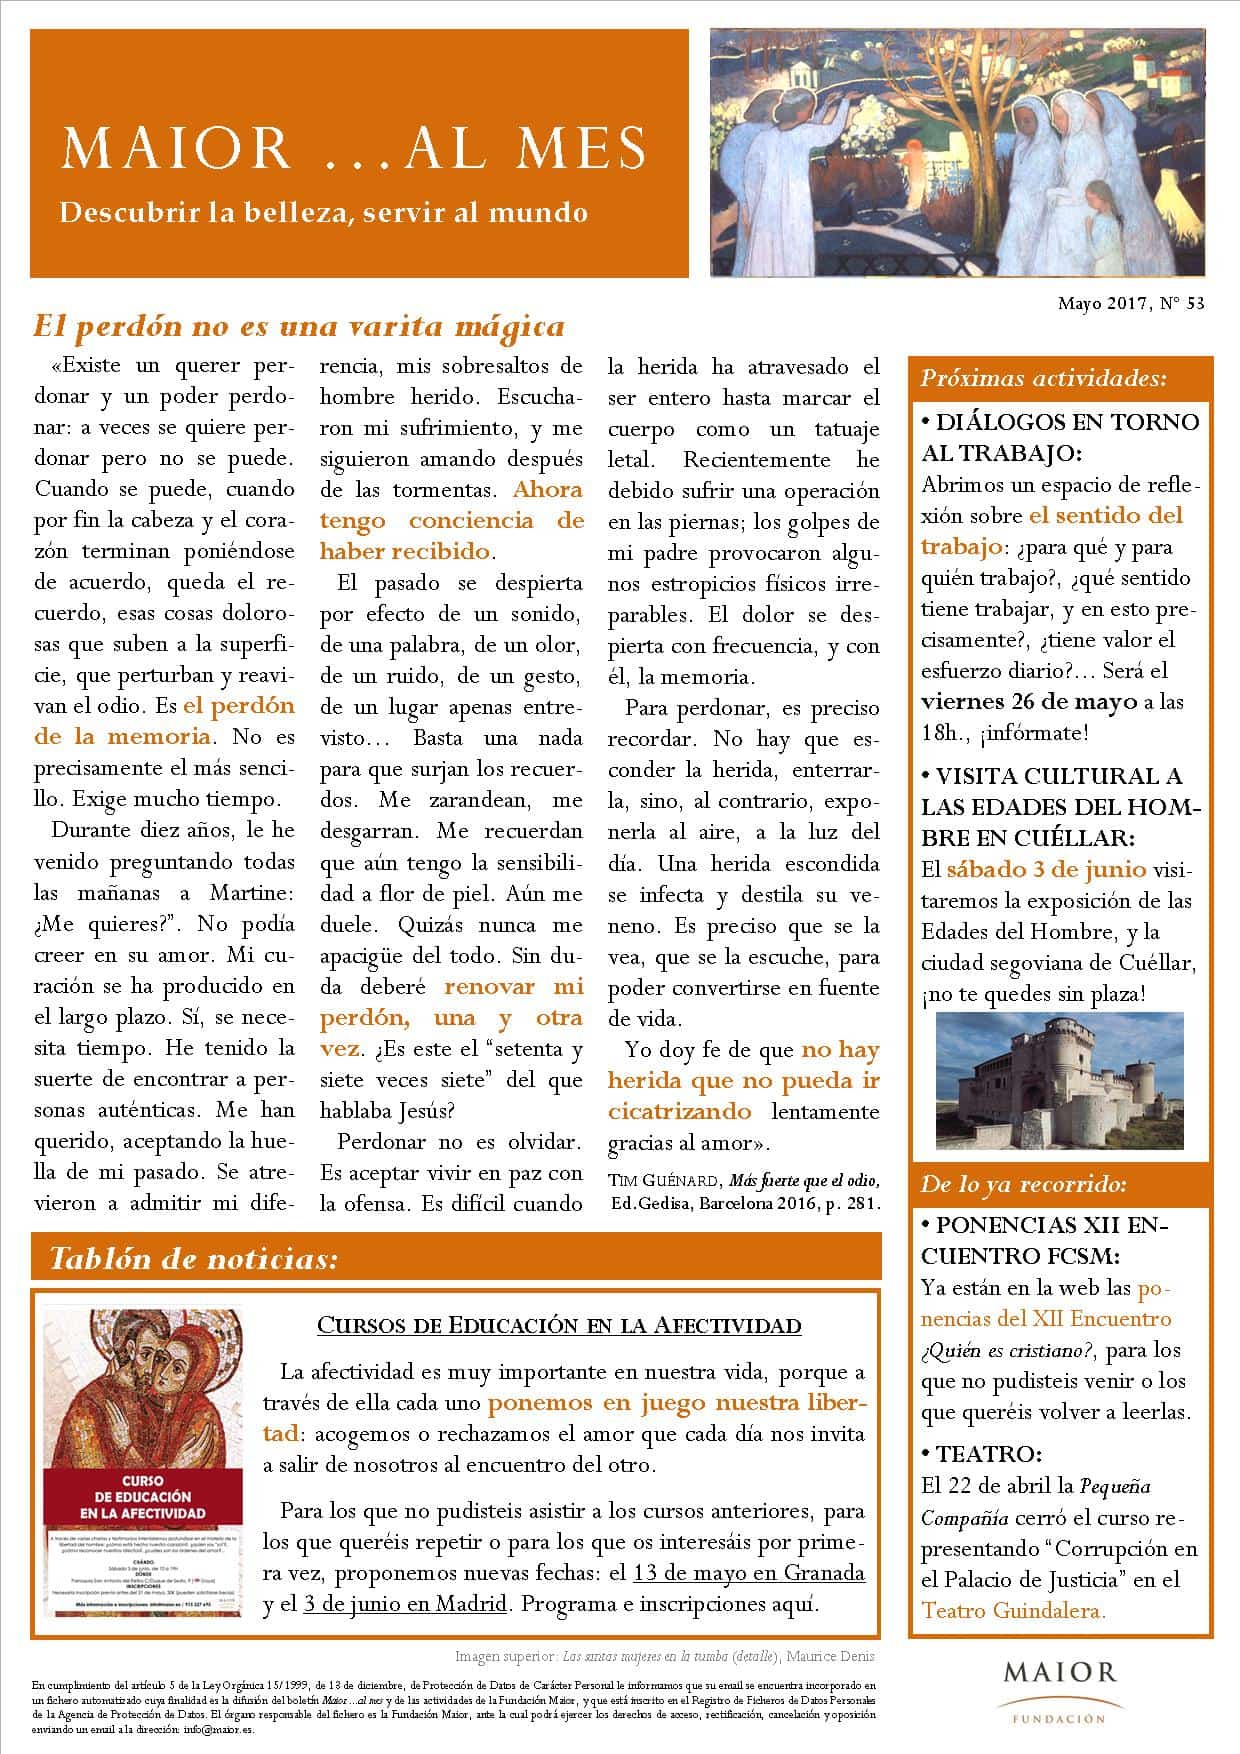 Boletín mensual de noticias y actividades de la Fundación Maior. Edición de mayo 2017